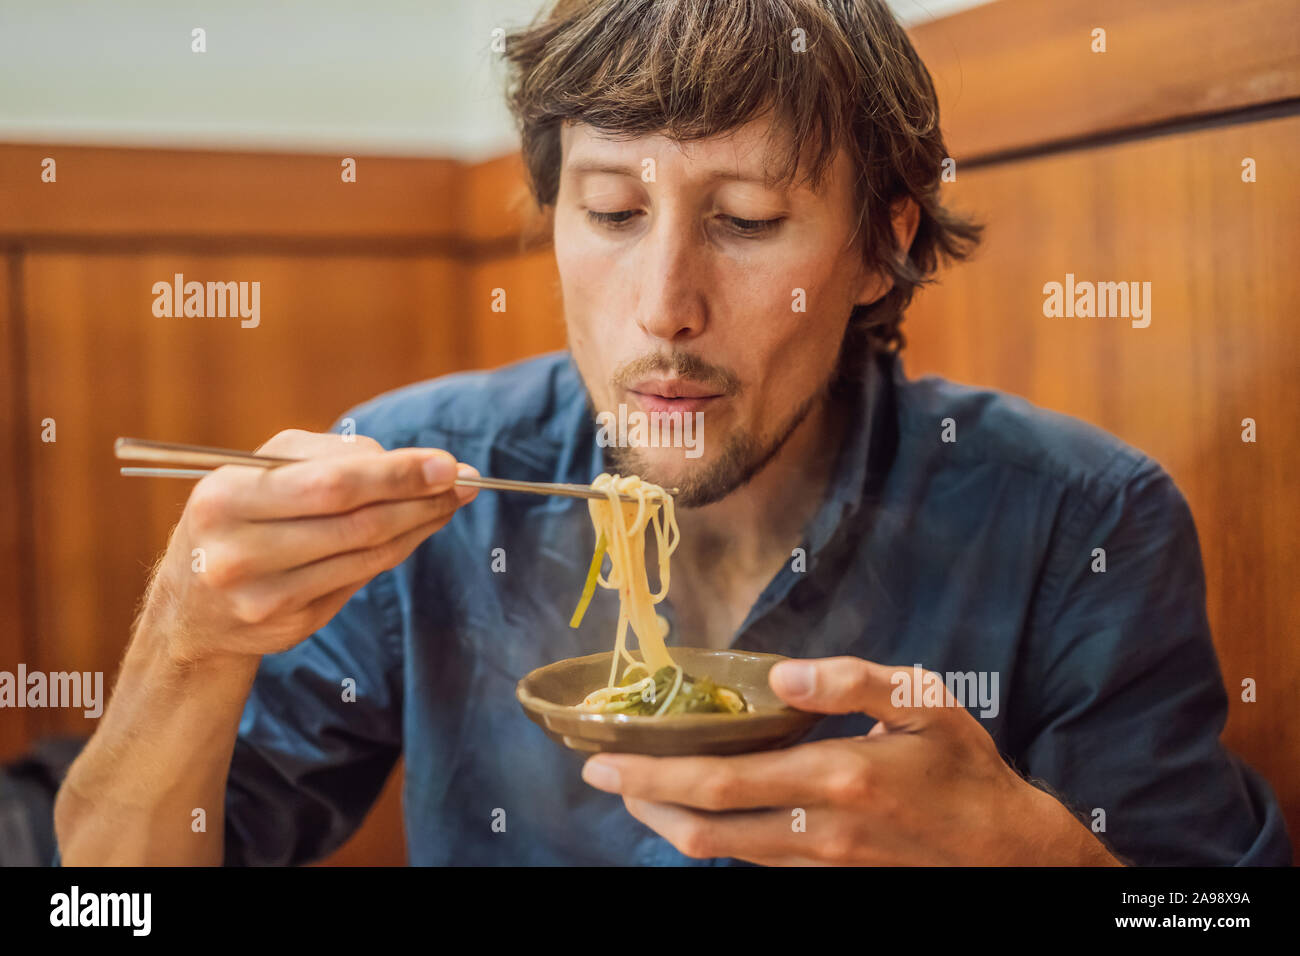 L'homme de manger des nouilles Coréen Coréen dans un café. Billet Corée Concept Banque D'Images